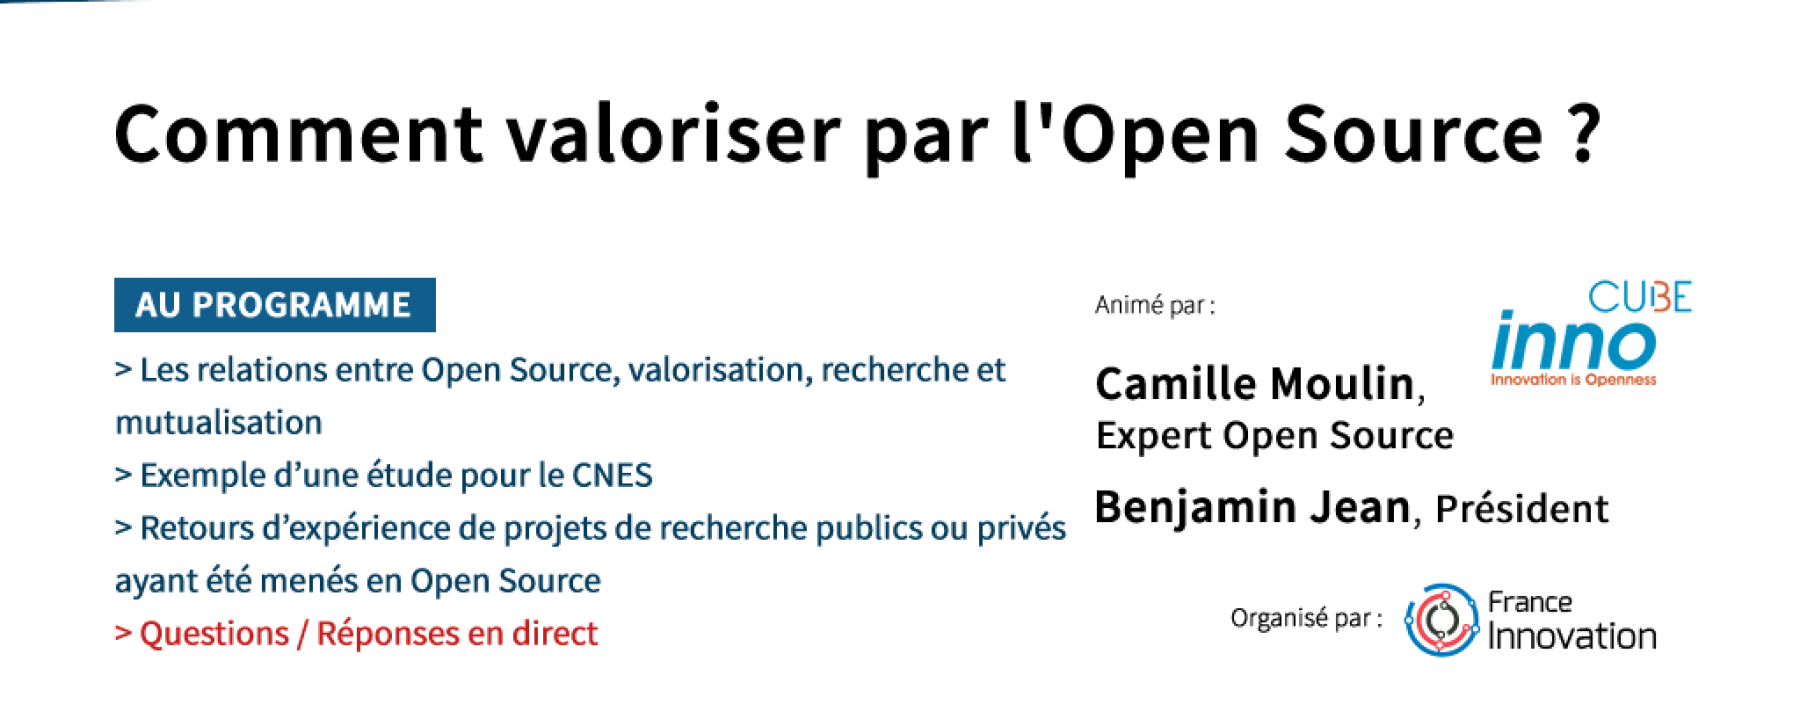 Webinar Comment valoriser par l'Open Source ?, le 7 mai 2020, organisé par France Innovation